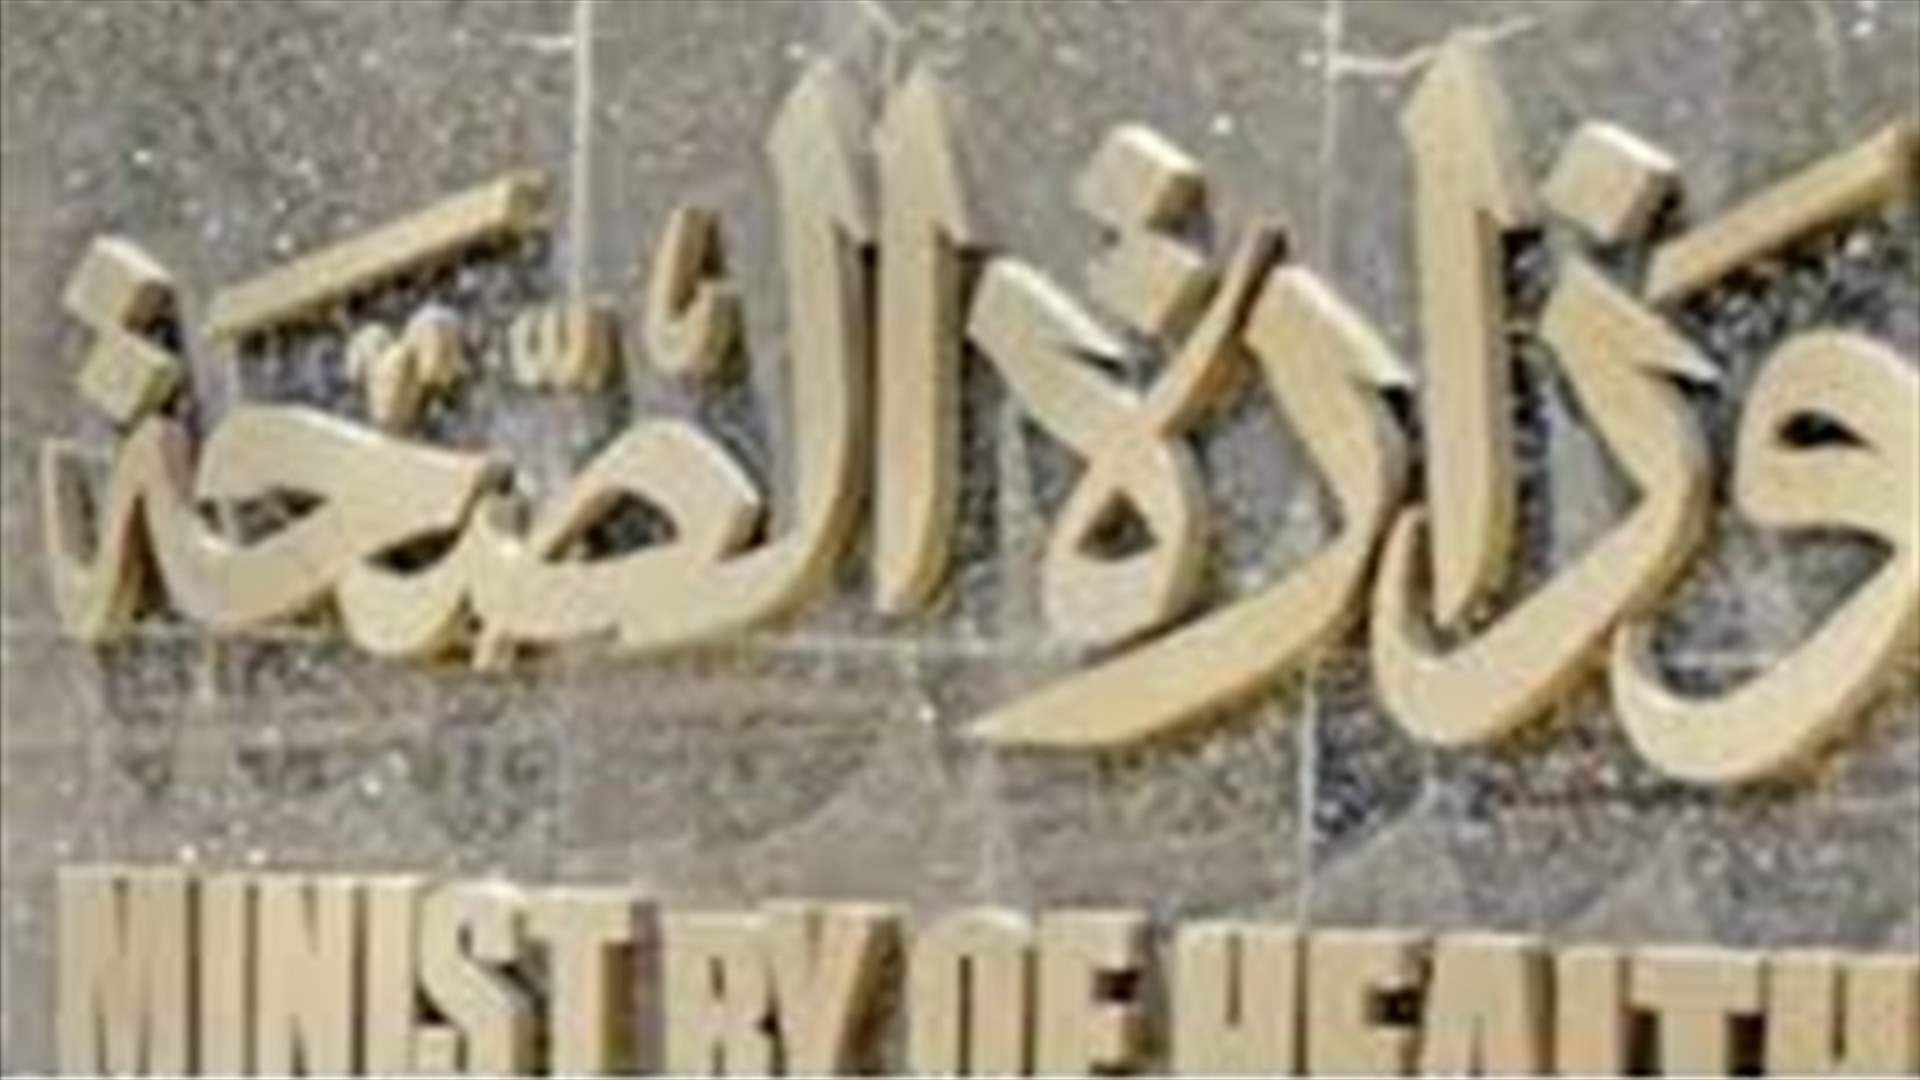  اقفال ميني ماركت محمد الحوراني في مجدل عنجر